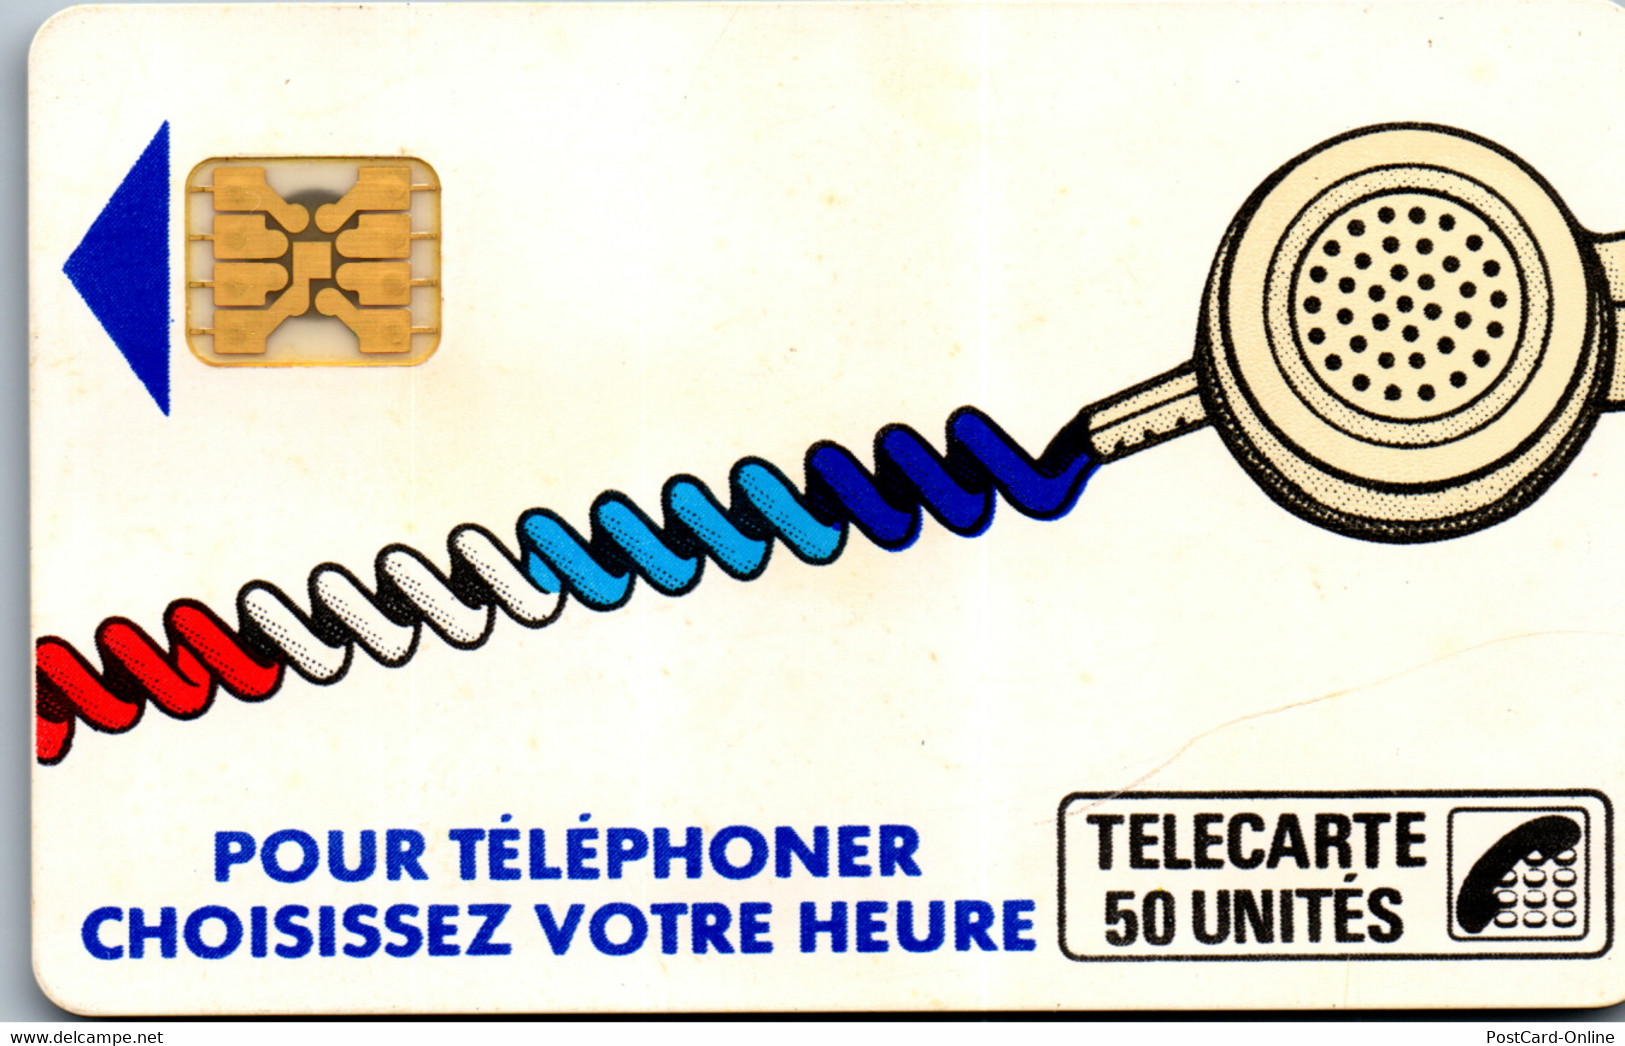 19261 - Frankreich - Pour Telephoner Choisissez Votre Heure , 50 Unites - Telefonschnur (Cordon)